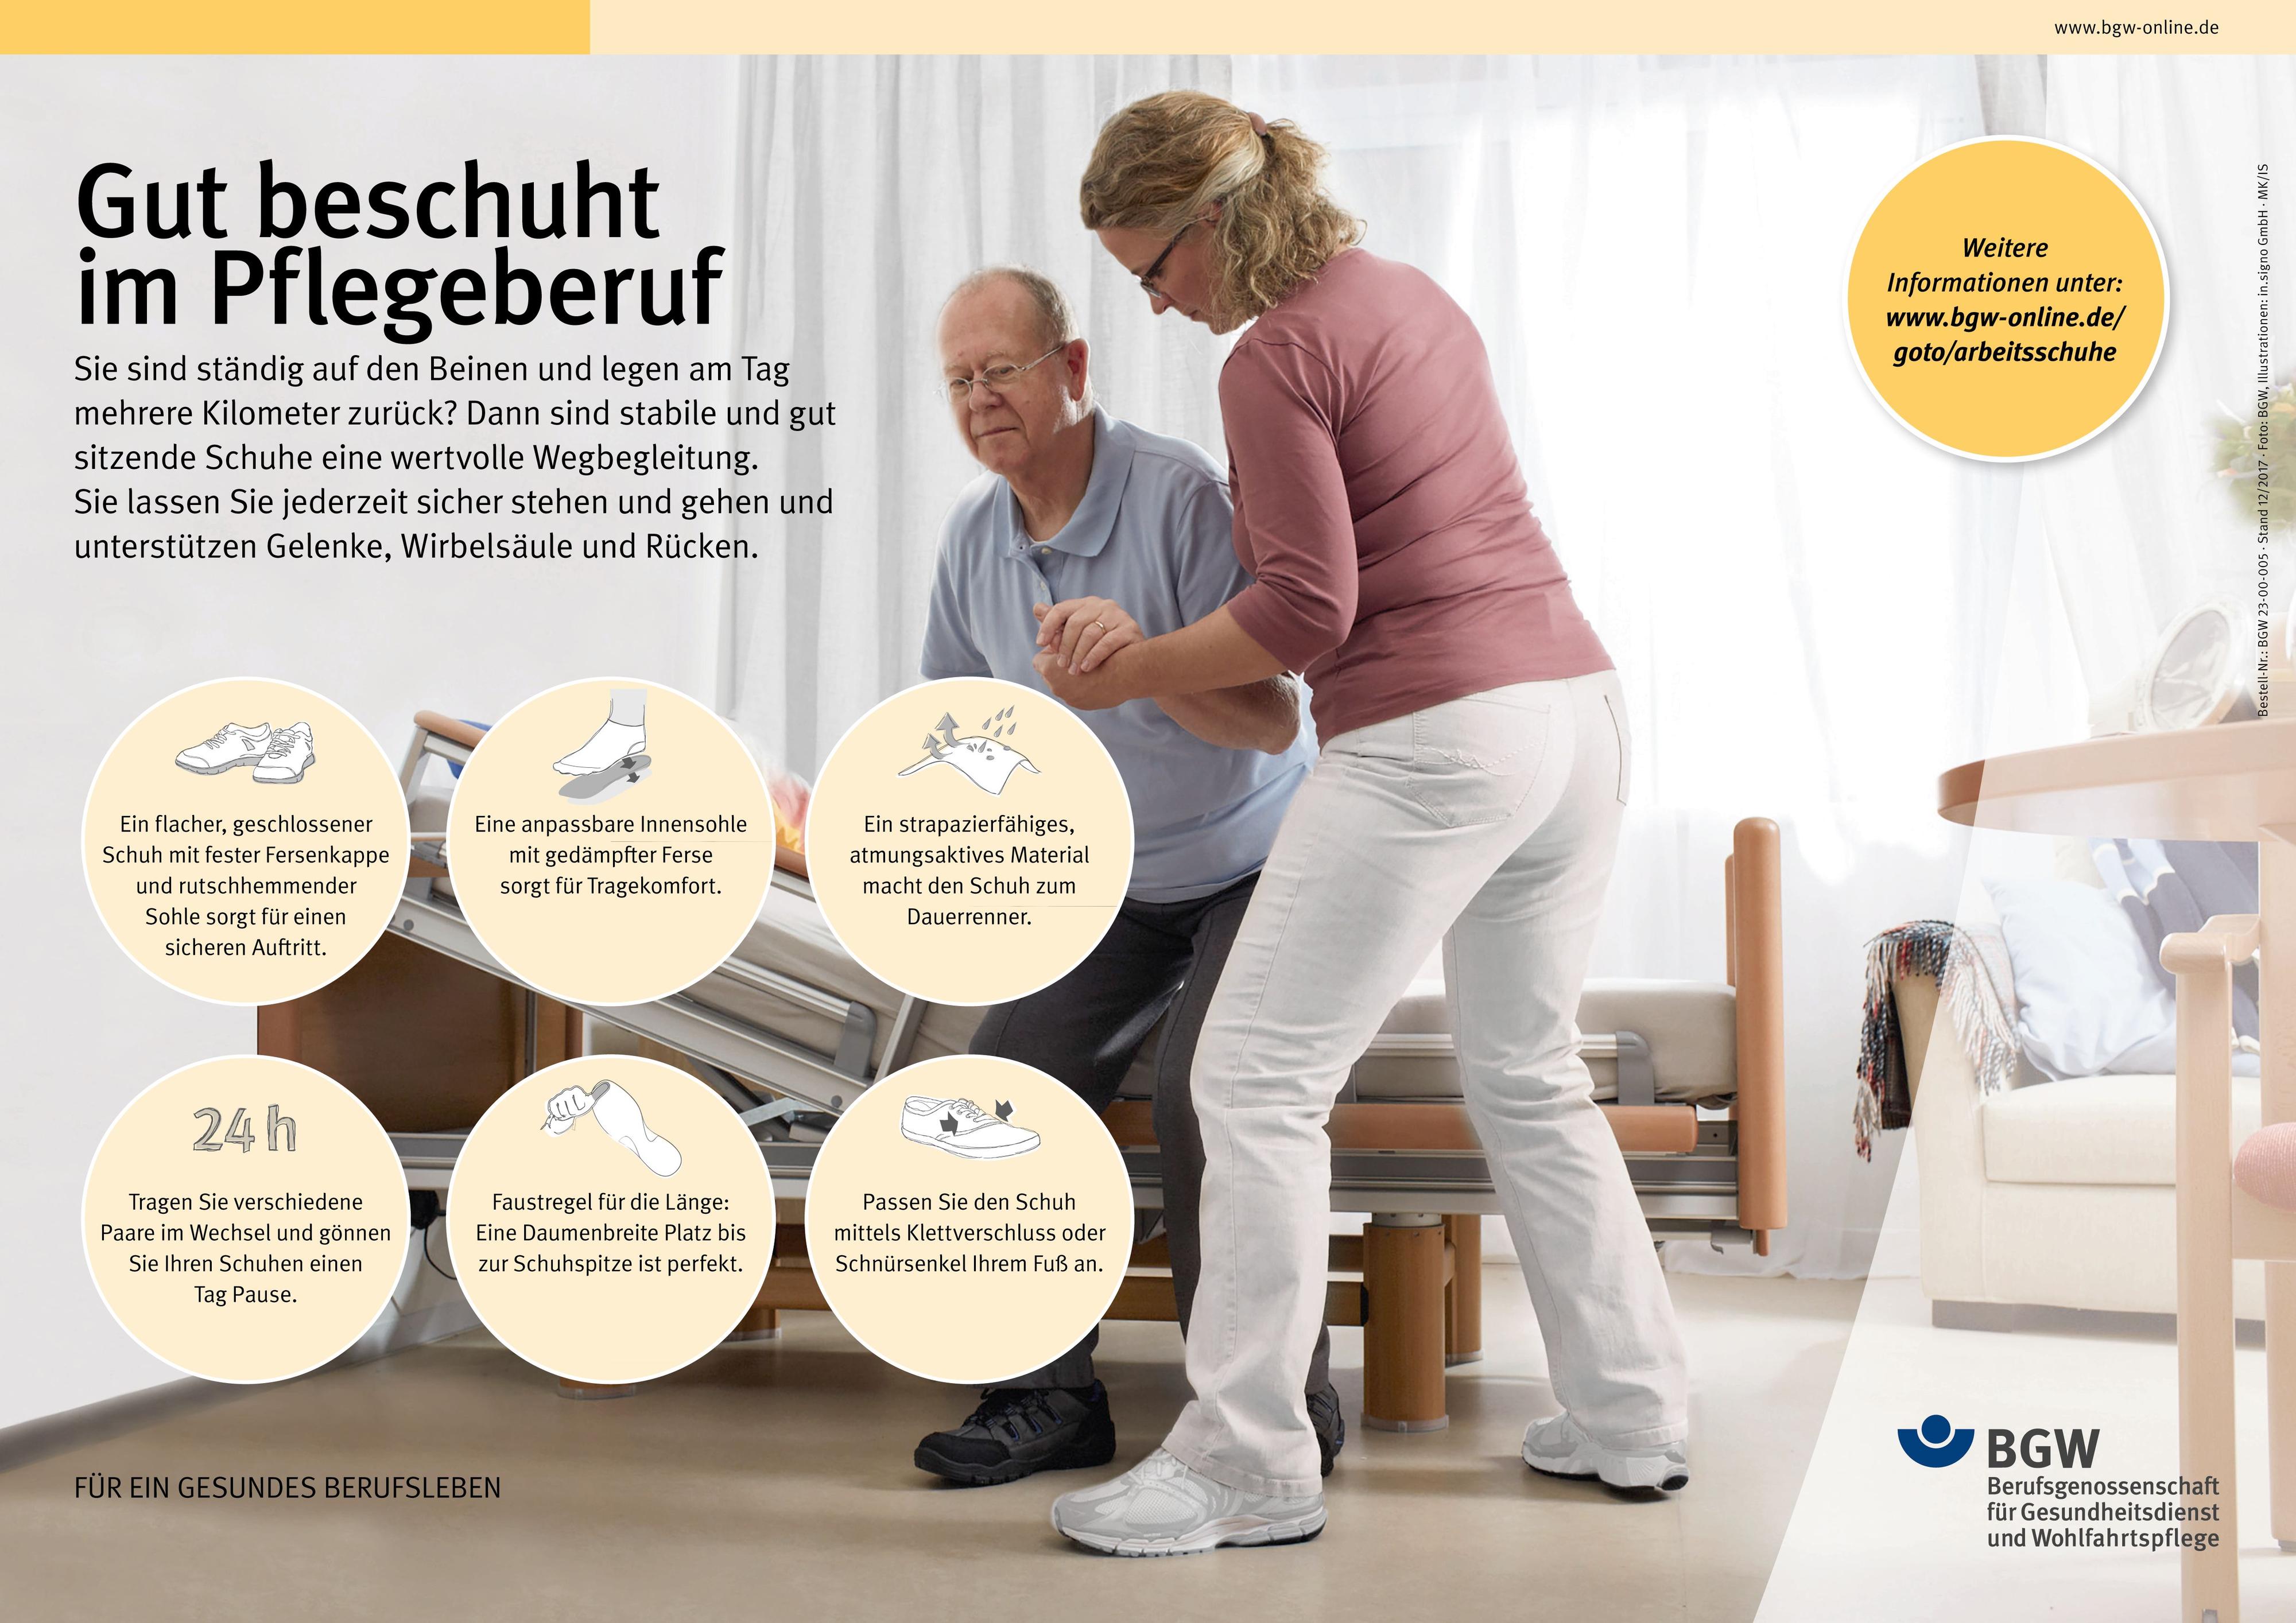 Themenplakat: Gut beschuht im Pflegeberuf - Pflegerin hilft einem alten Mann aus dem Bett, daneben Tipps für richtige Pflegeschuhe.